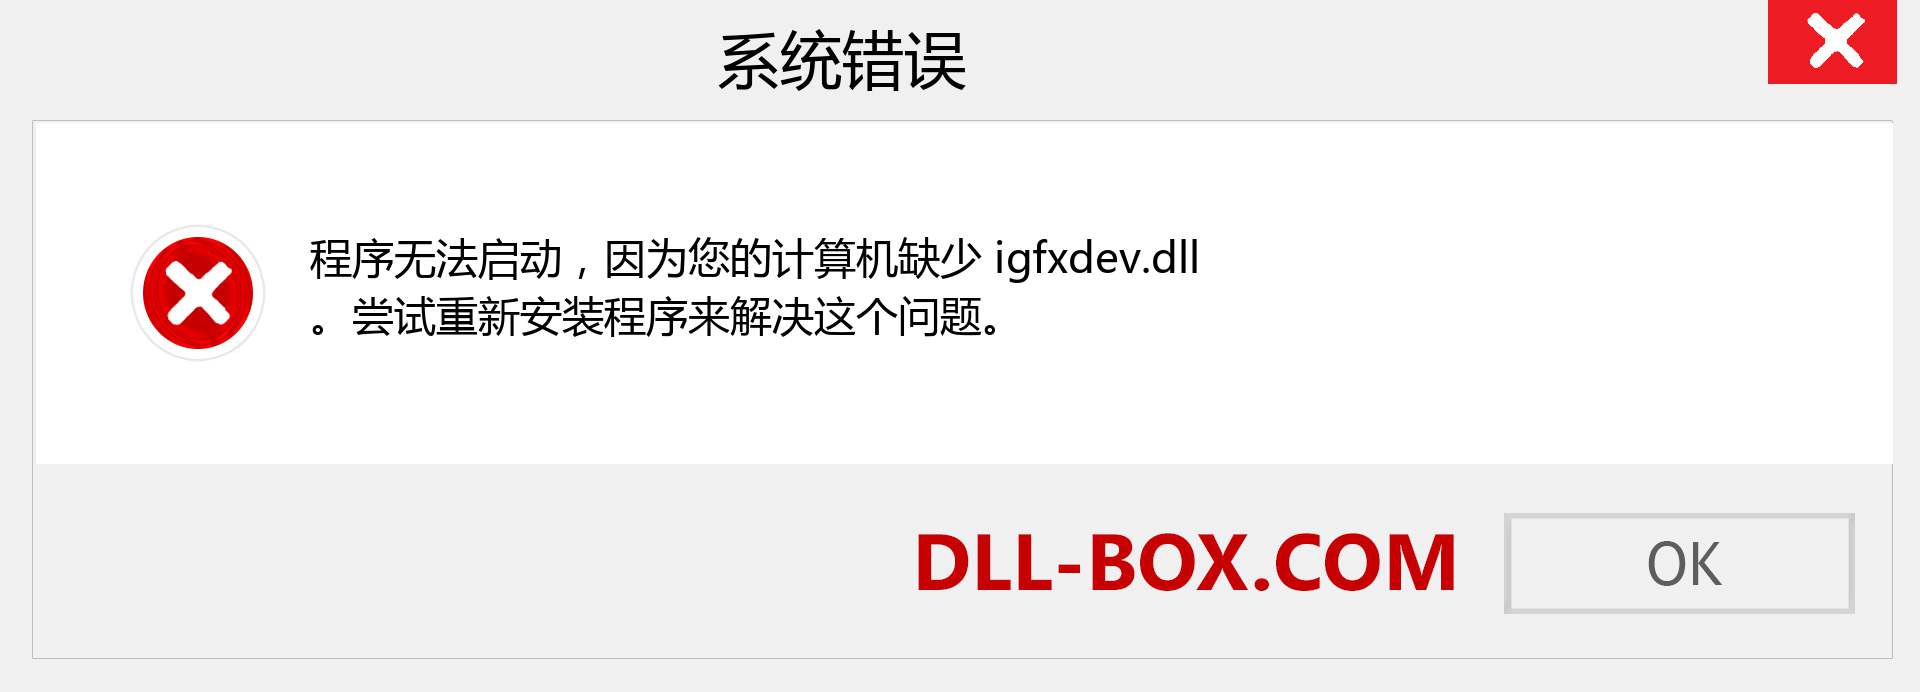 igfxdev.dll 文件丢失？。 适用于 Windows 7、8、10 的下载 - 修复 Windows、照片、图像上的 igfxdev dll 丢失错误